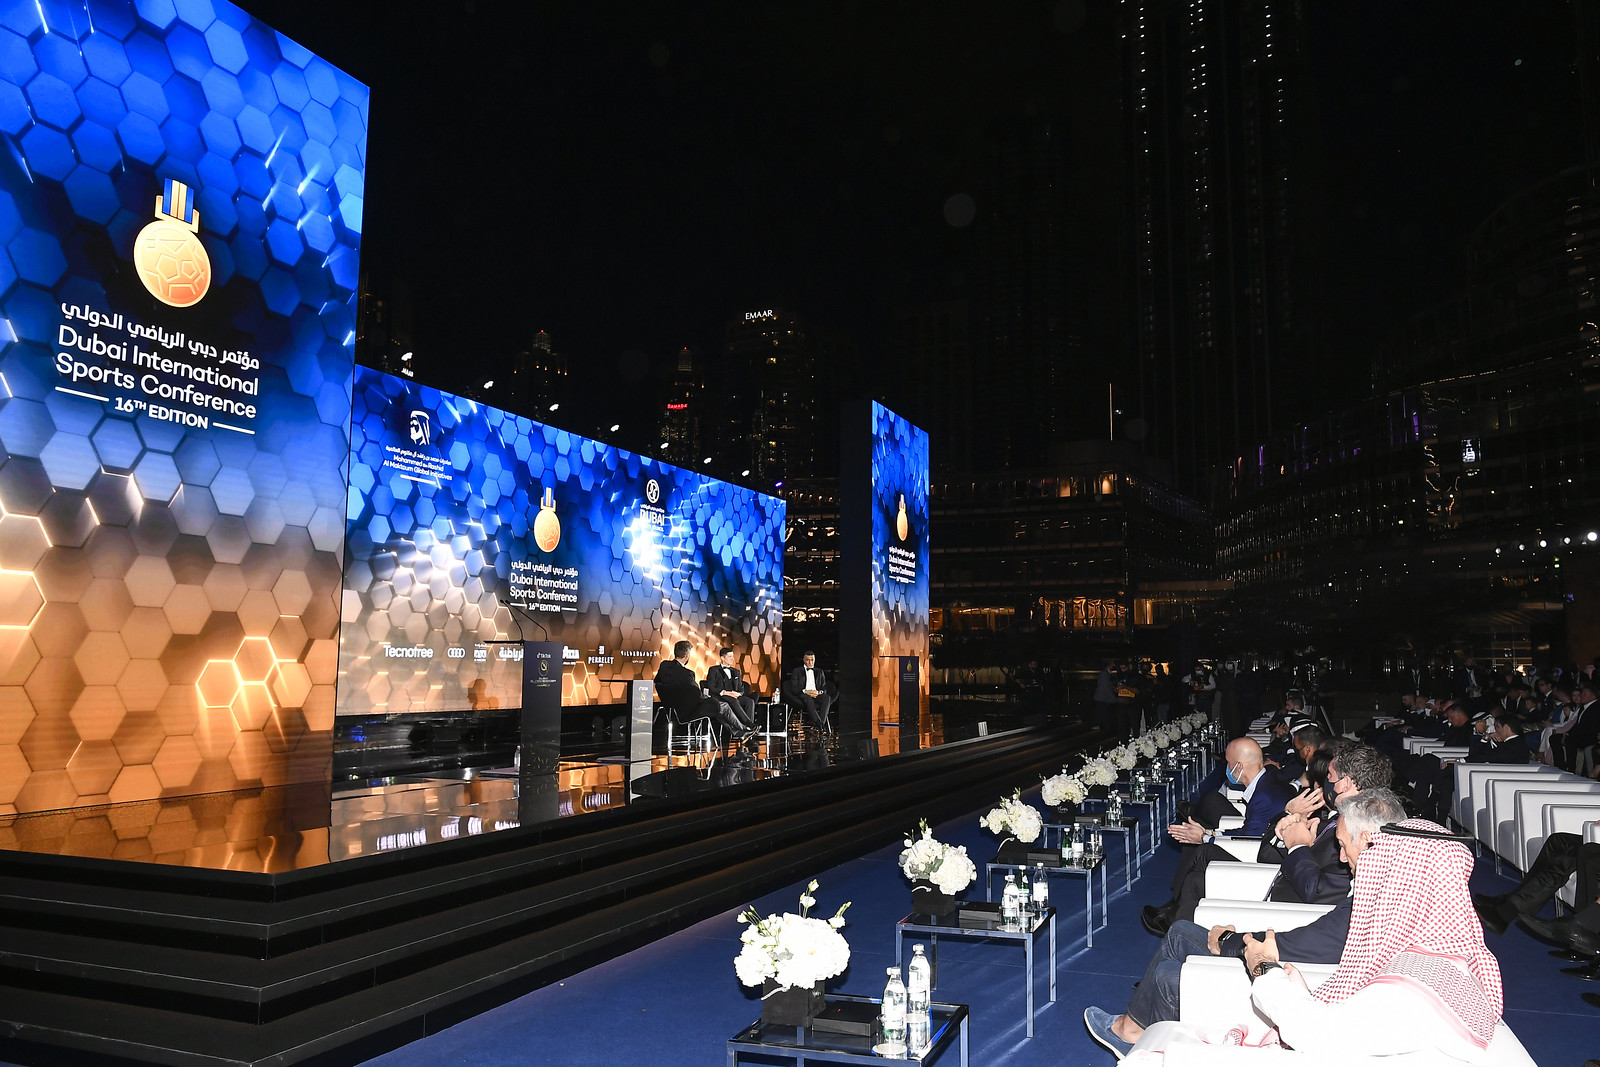 16ma edizione di Dubai International Sports Conference - Globe Soccer Awards 2021